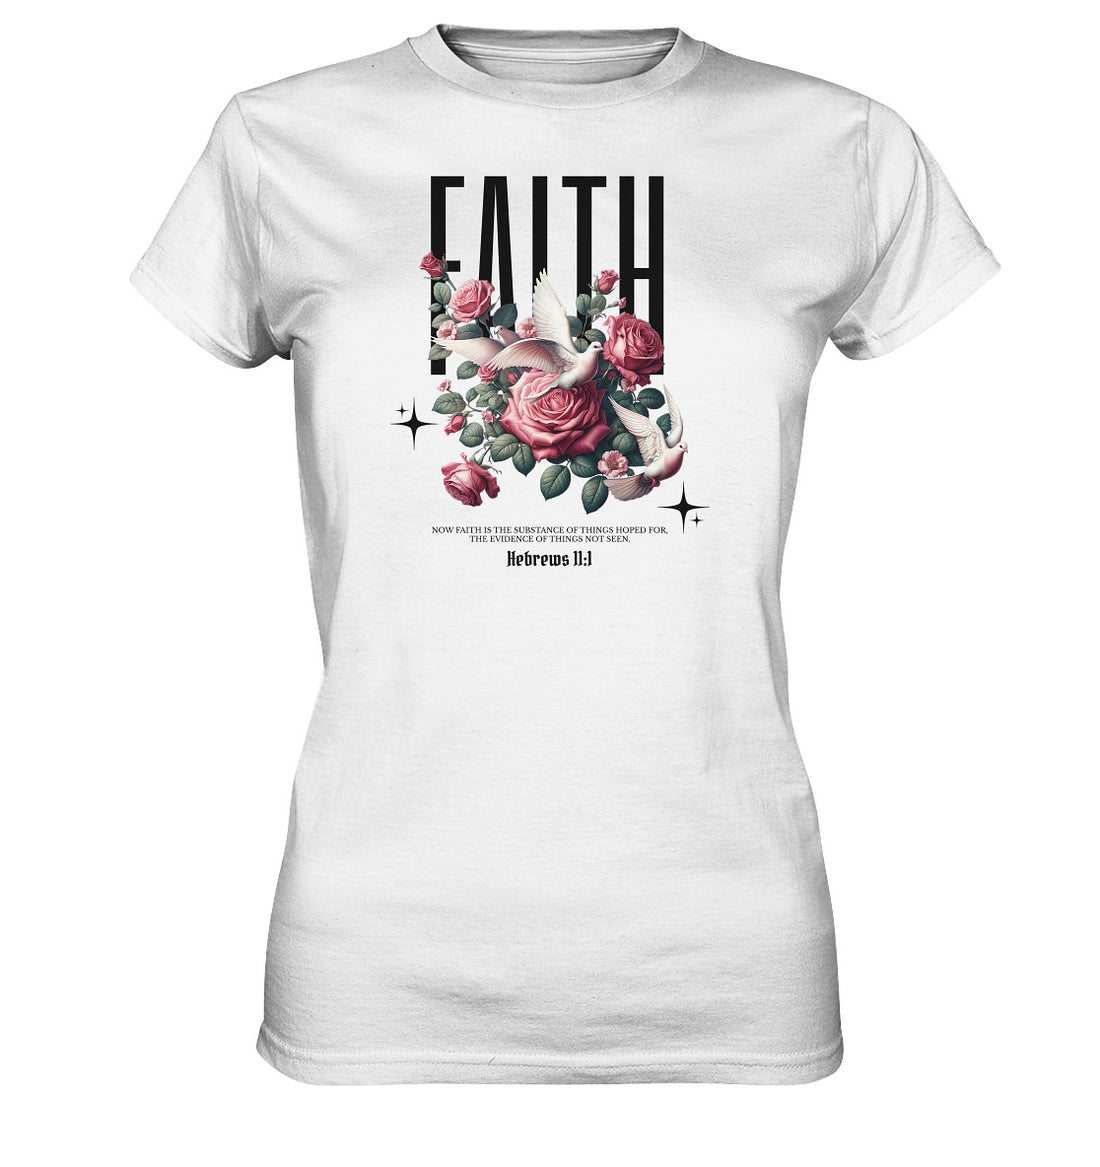 Hebr 11,1 - FAITH - Brustprint - Ladies Premium Shirt